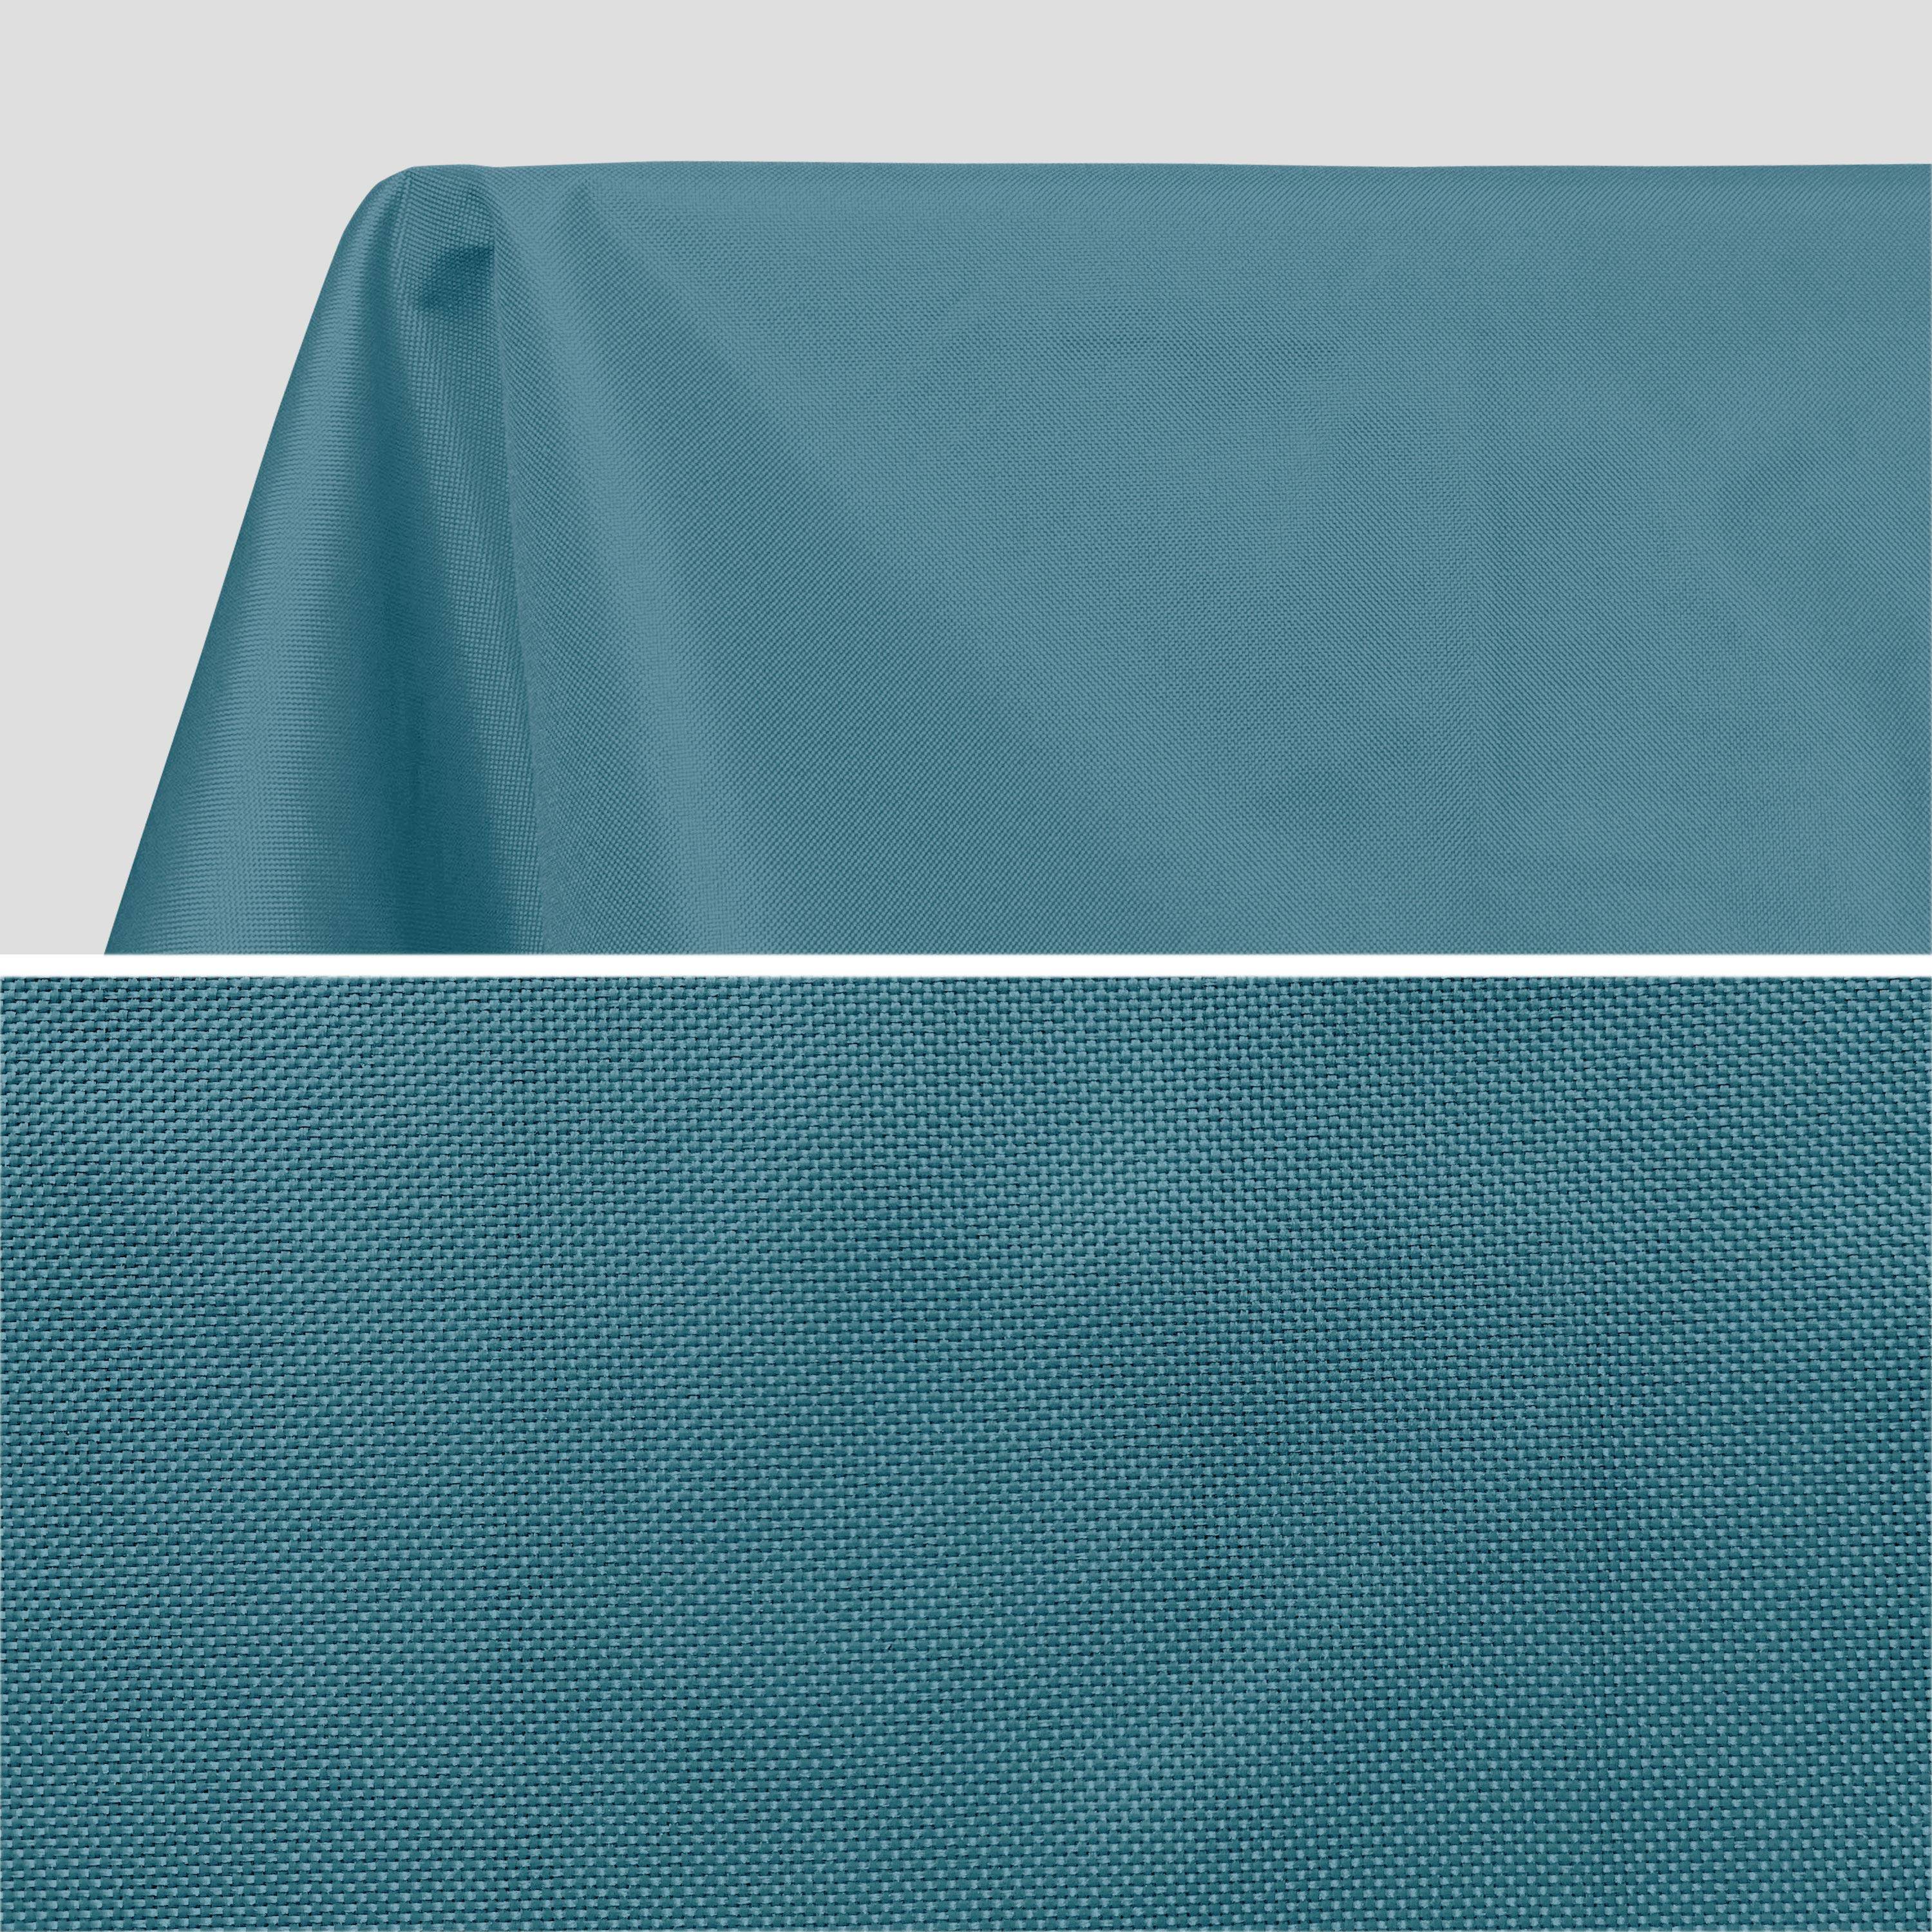 Kollection EXOTIQUE - Outdoor-Tischdecke 140 x 240 cm Entenblau, 100% Polyester, schützt den Tisch, UV-Schutz, sommerlicher Stil Photo2